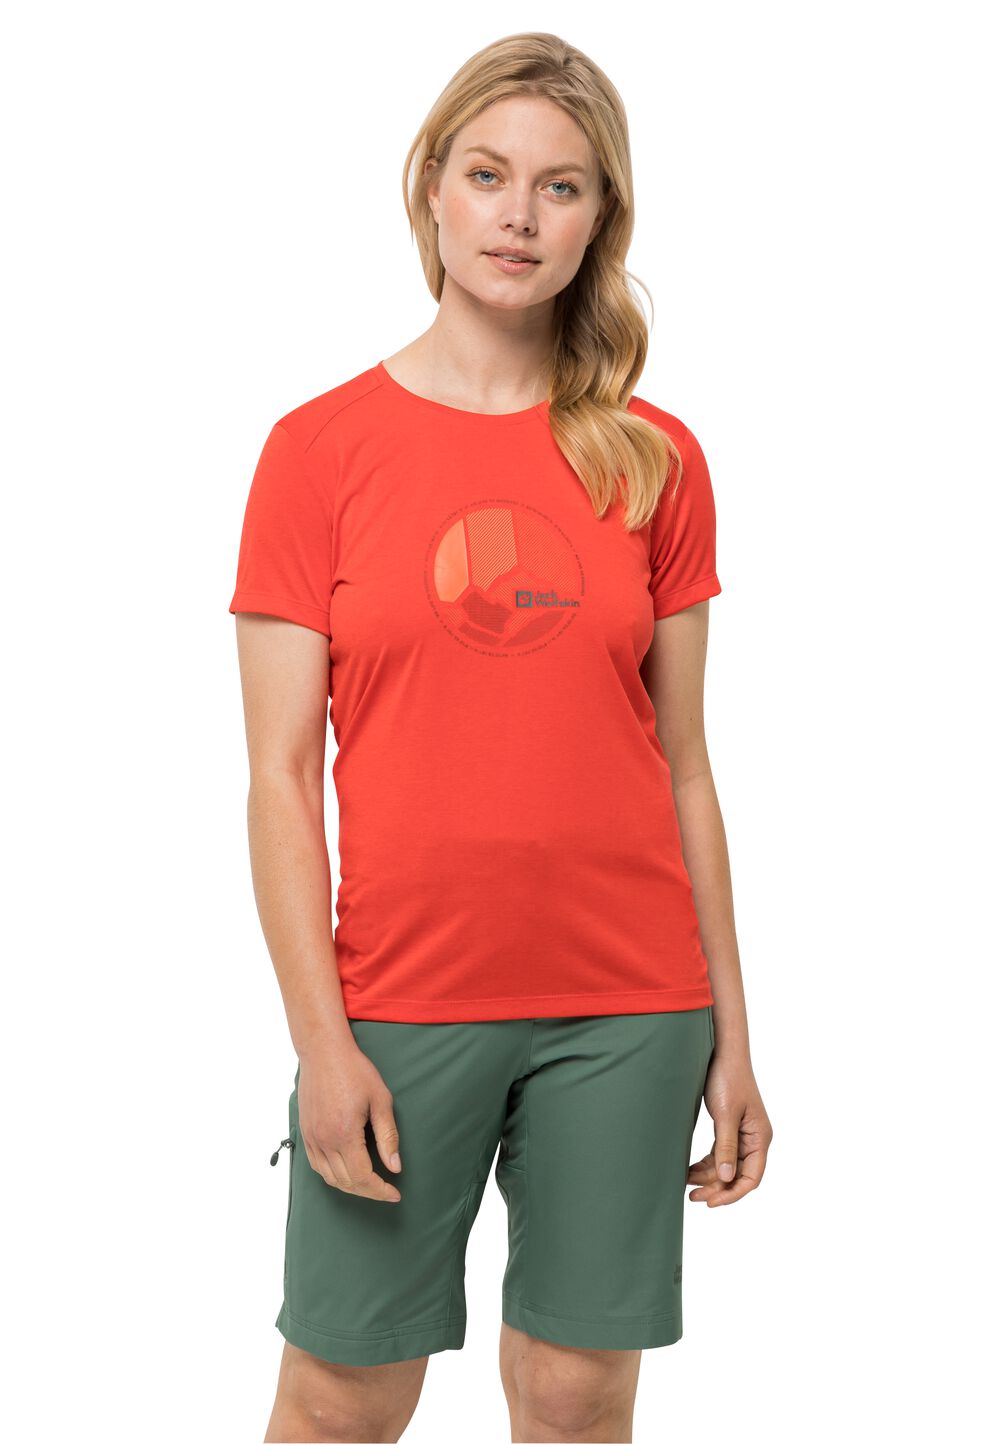 Jack Wolfskin Funktionsshirt Damen Crosstrail Graphic T-Shirt Women XL tango orange tango orange von Jack Wolfskin